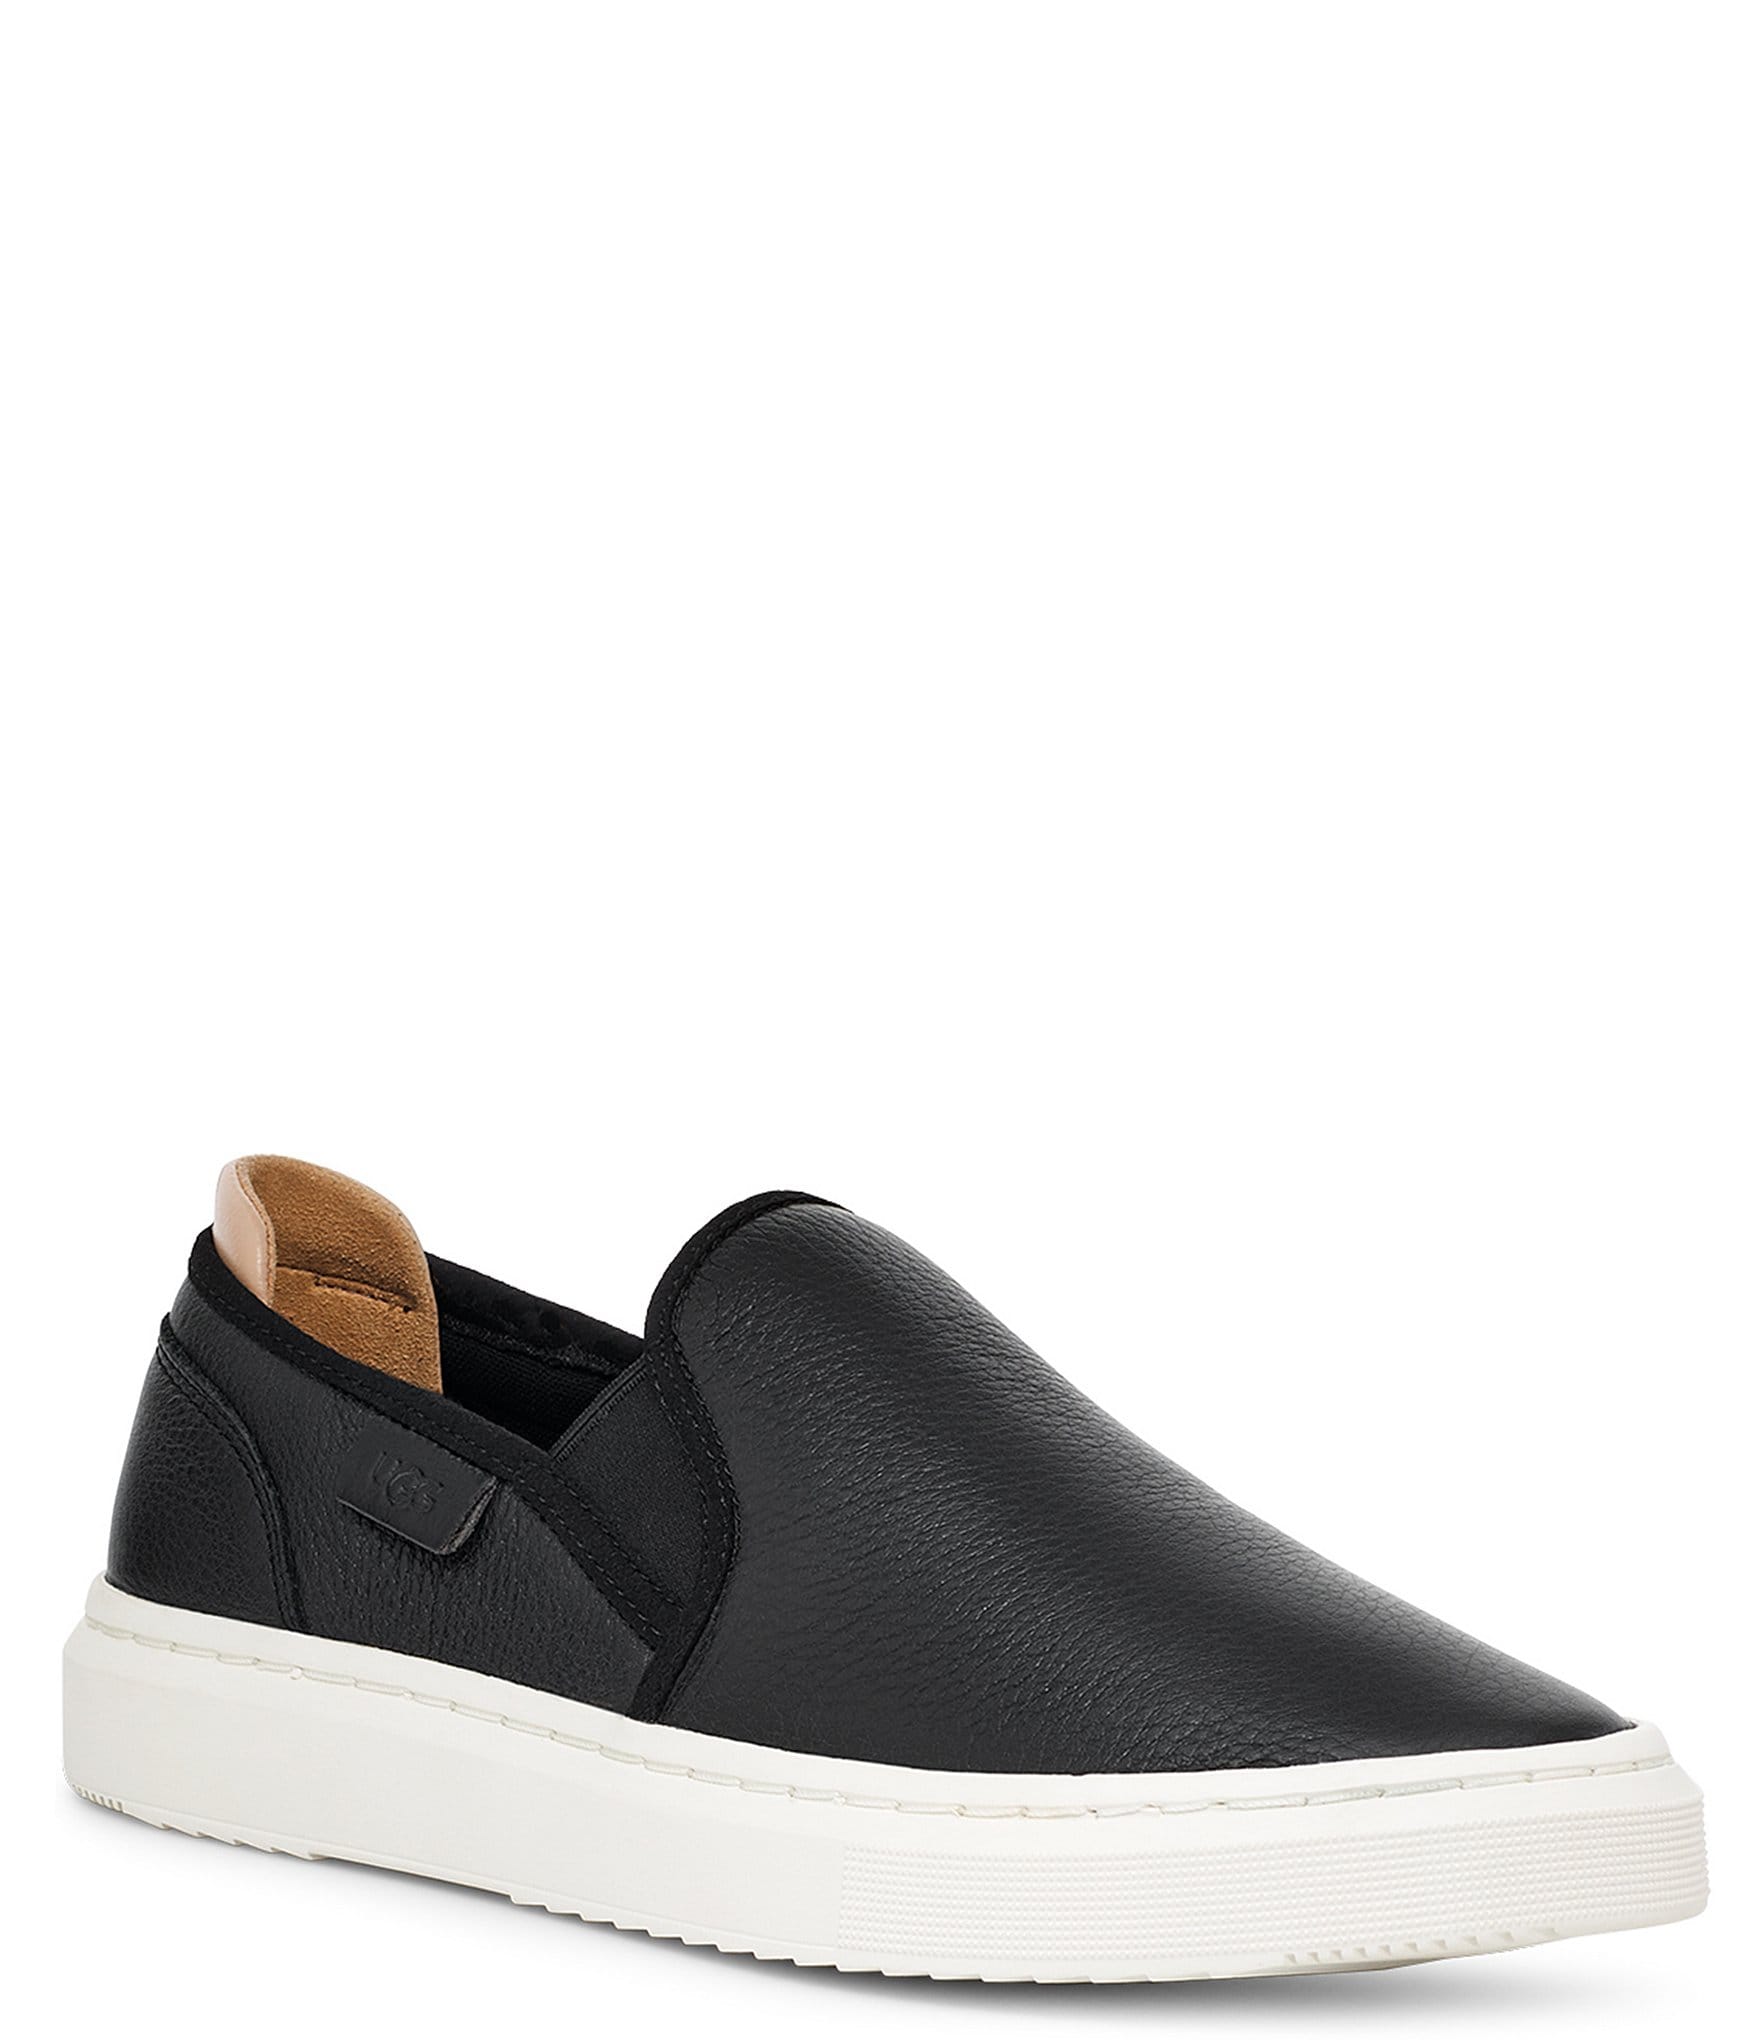 UGG Sammy Slip On Sneaker - Black & Gray Size 7 - sossenseofstyle.com